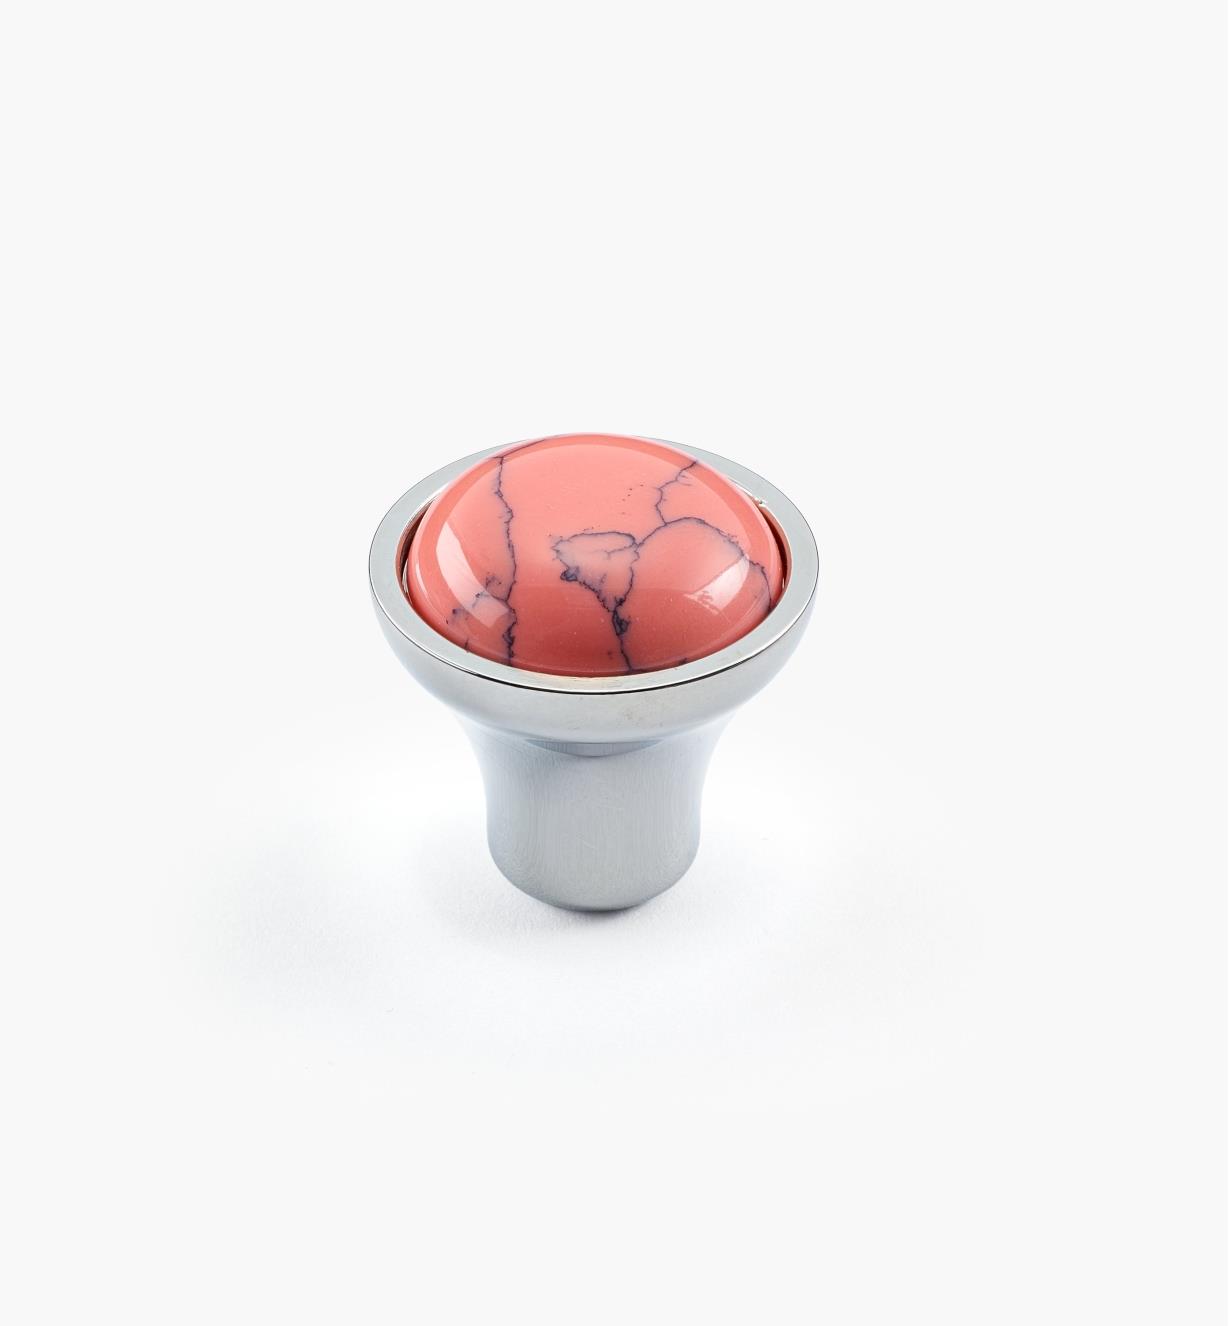 01A3641 - Petit bouton gemme rose, fini chrome poli, 23 mm